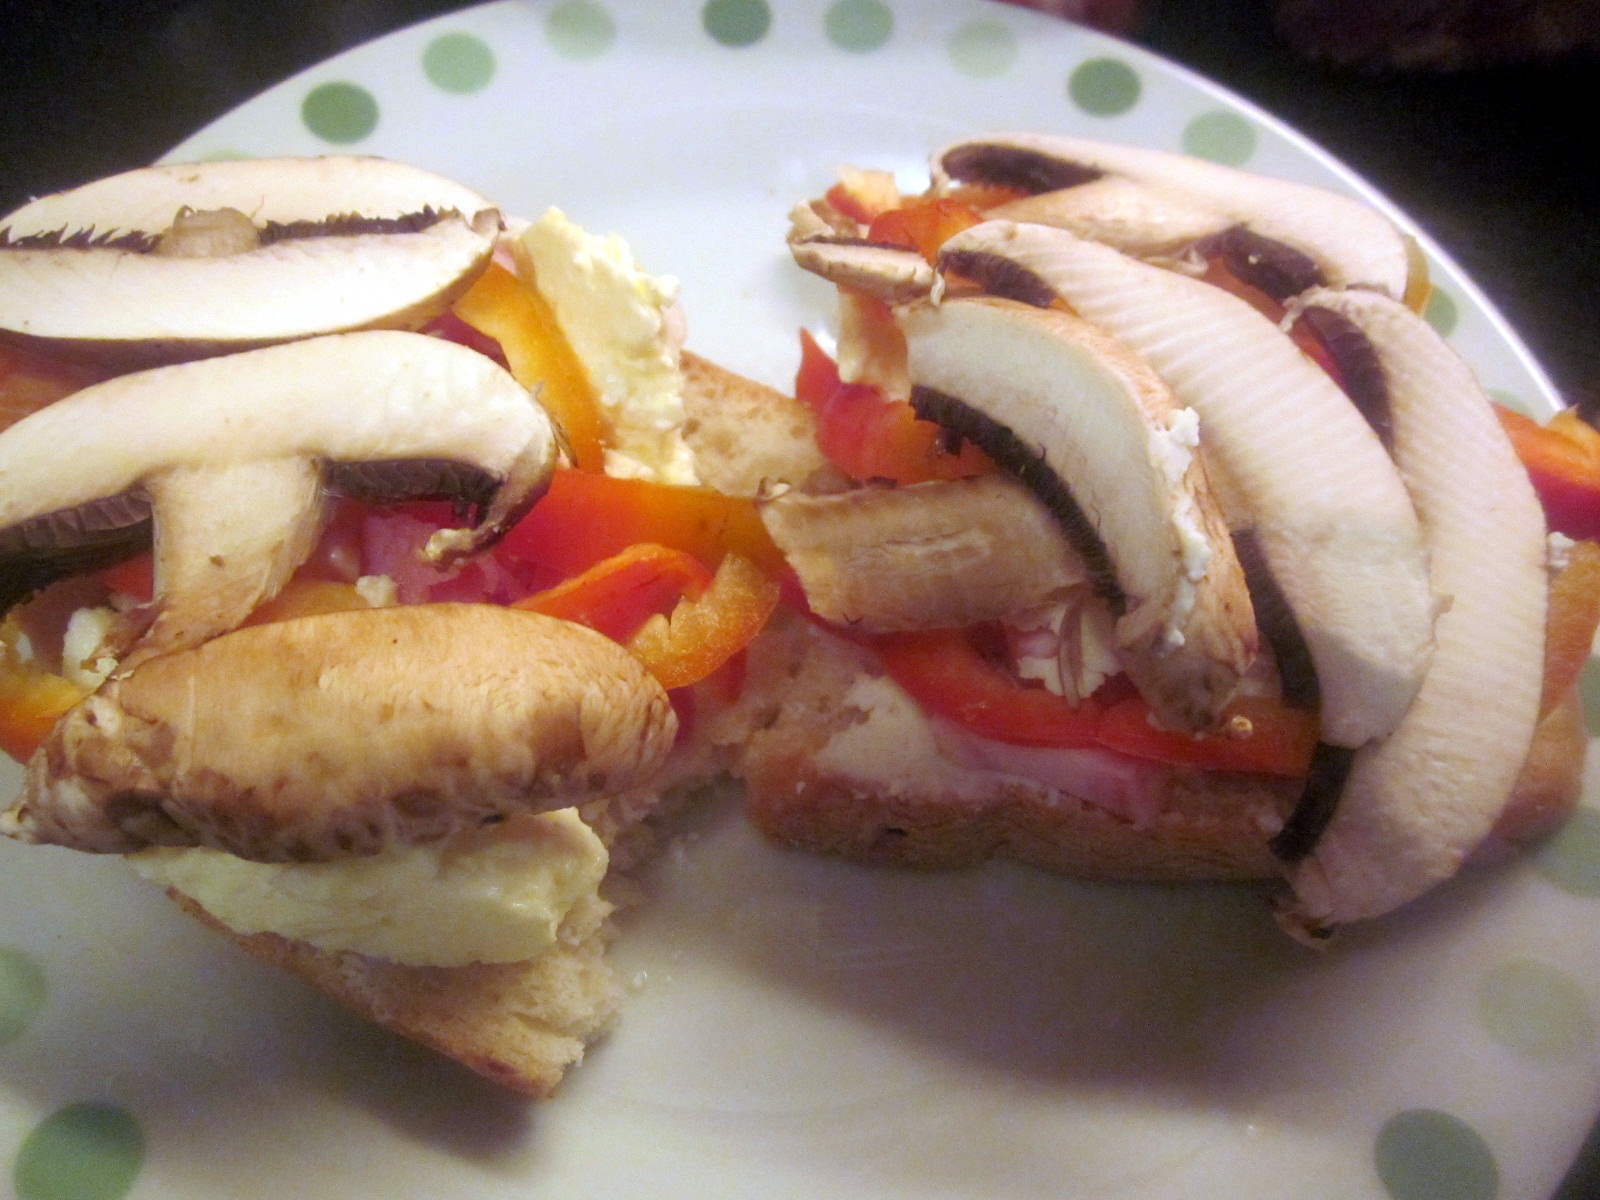 Sandviș cu brânzică Ceva fin, bacon și ciuperci